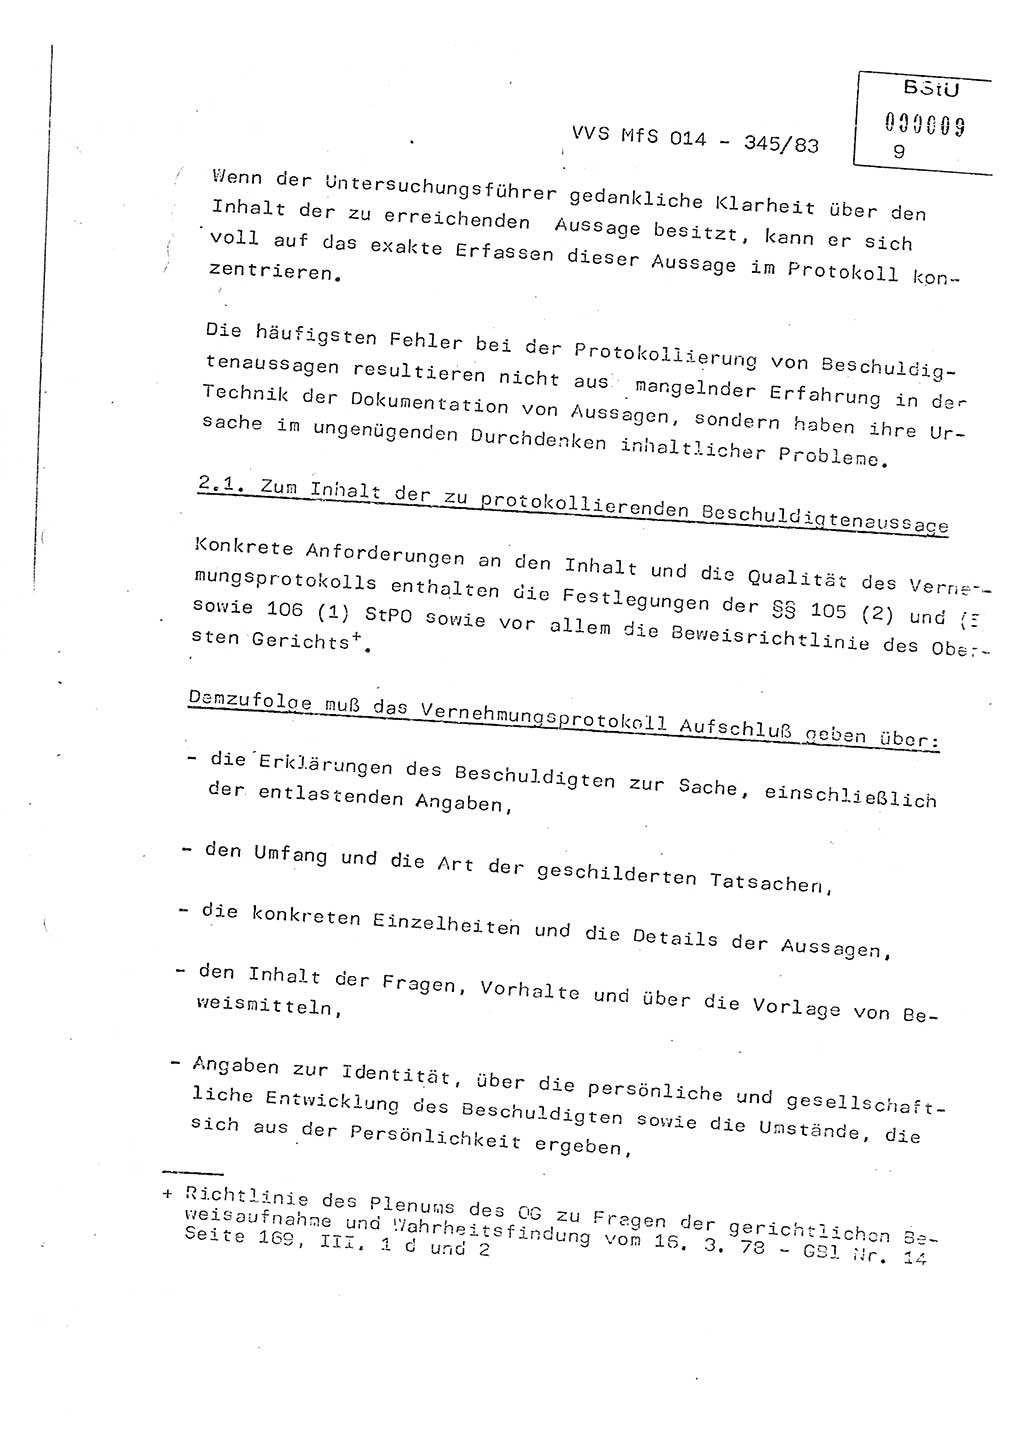 Lektion Ministerium für Staatssicherheit (MfS) [Deutsche Demokratische Republik (DDR)], Hauptabteilung (HA) Ⅸ, Vertrauliche Verschlußsache (VVS) o014-345/83, Berlin 1983, Seite 9 (Lekt. MfS DDR HA Ⅸ VVS o014-345/83 1983, S. 9)